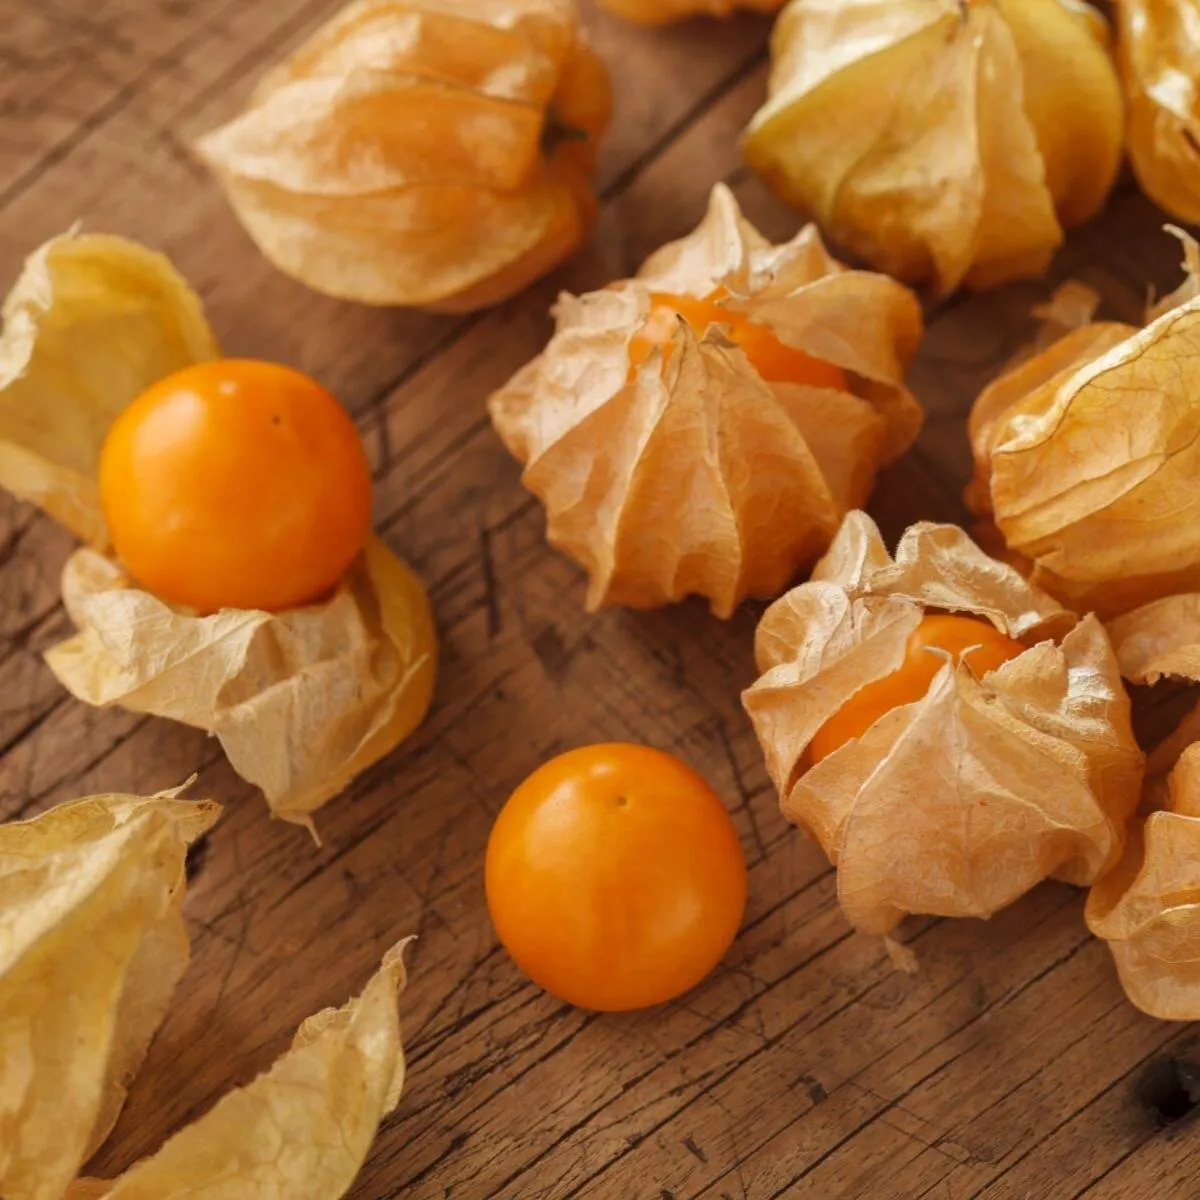 physalis mehrjährige pflanze orange köstliche früchte